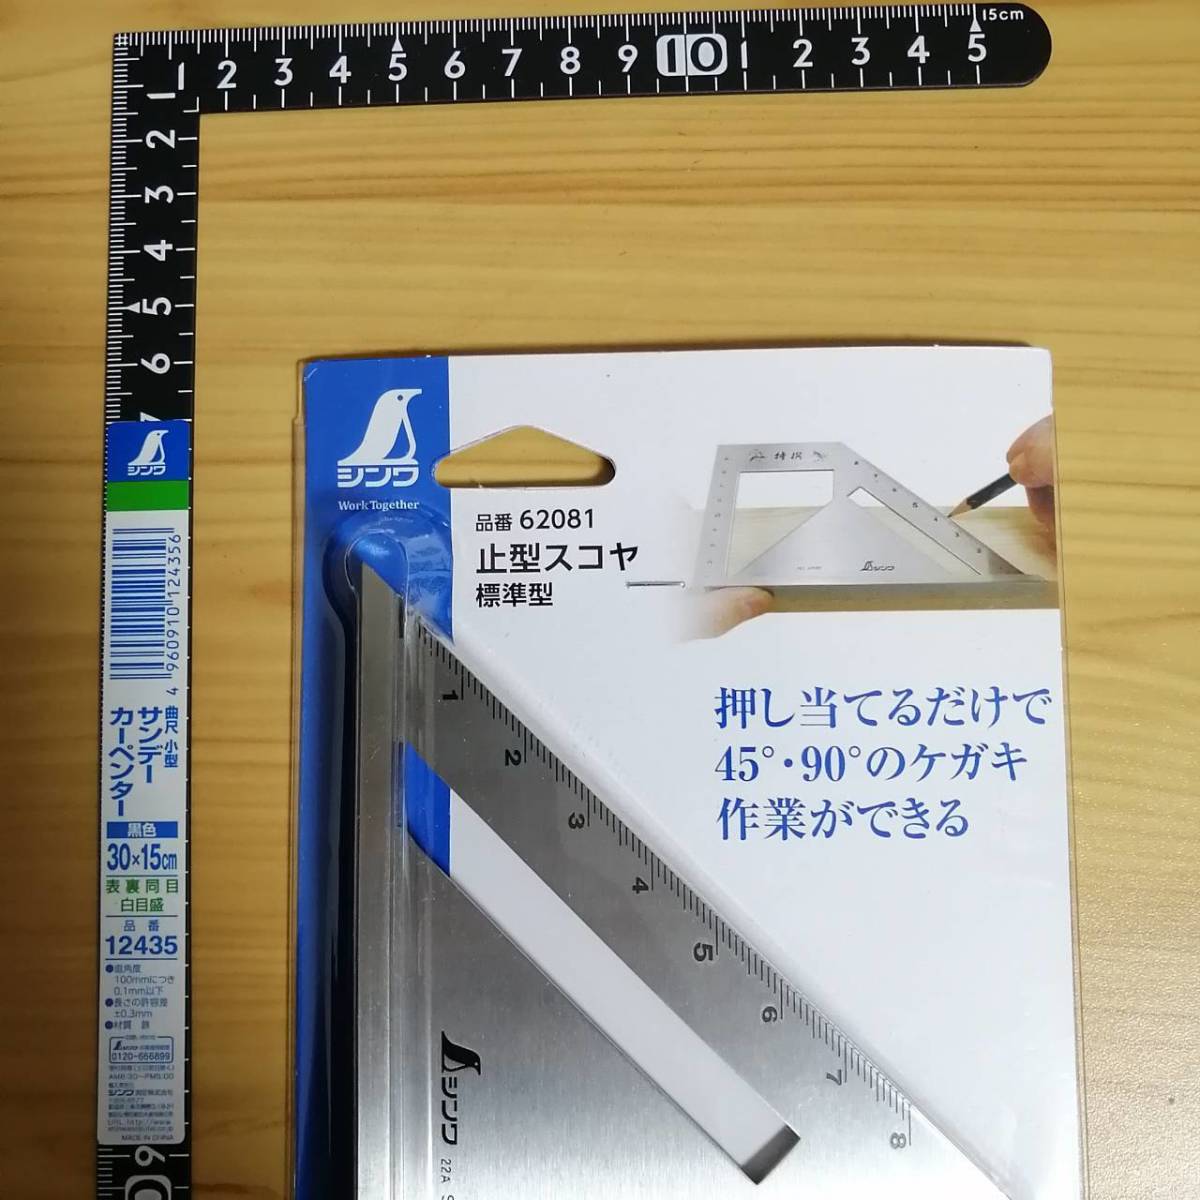  инструмент sinwa12435 30cm искривление сяку останавливаться type skoya новый товар 